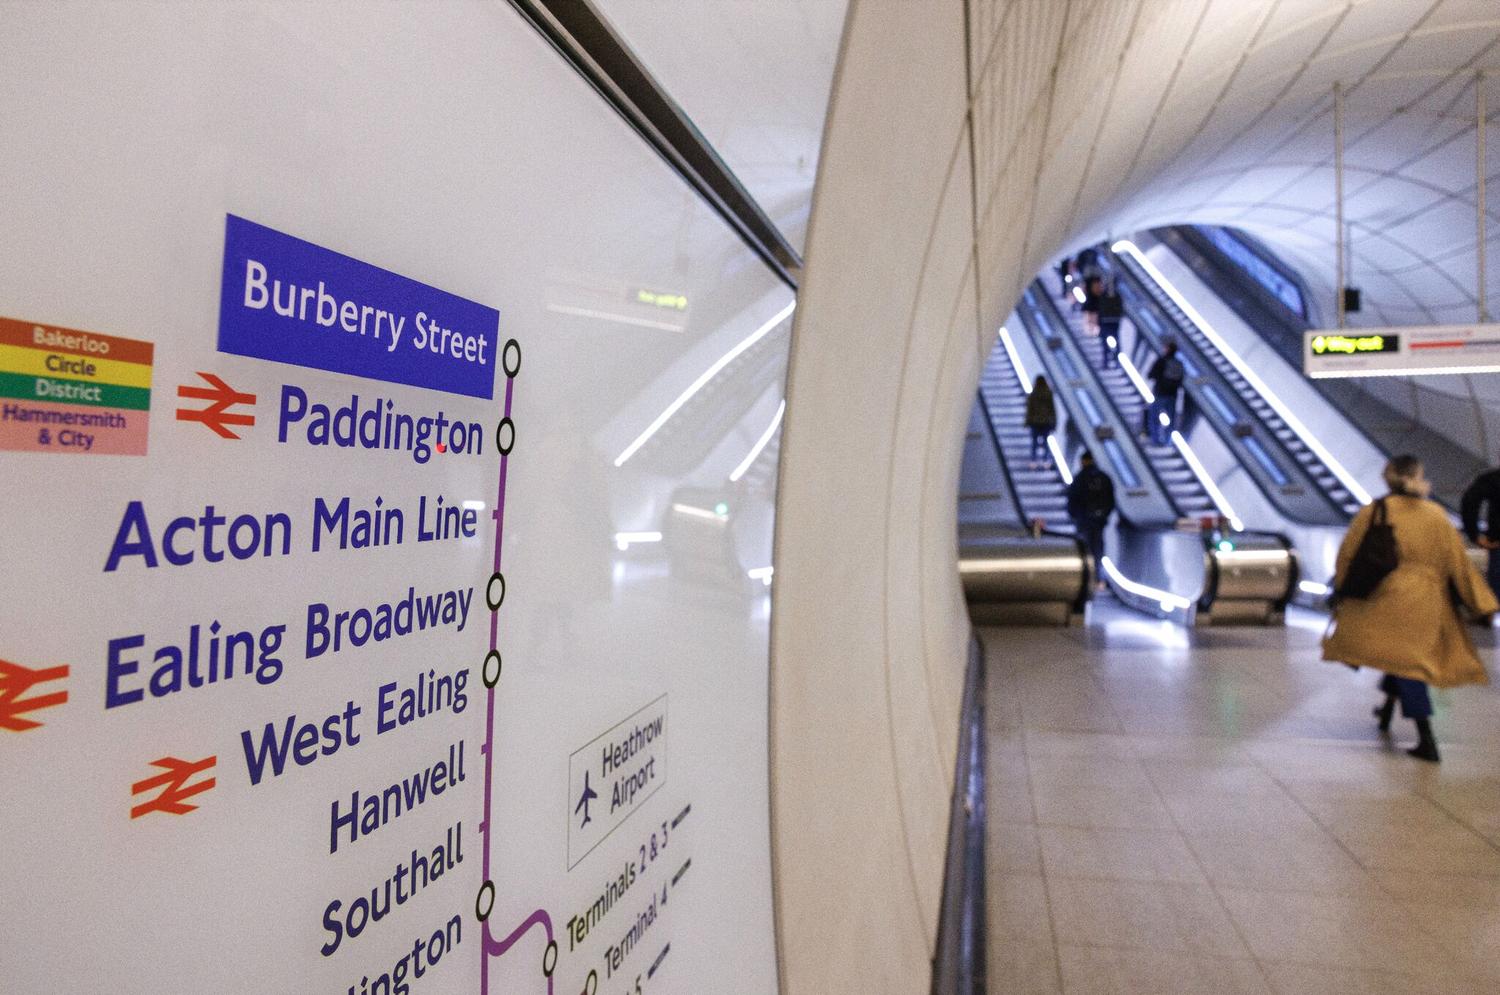 Burberry metro londres